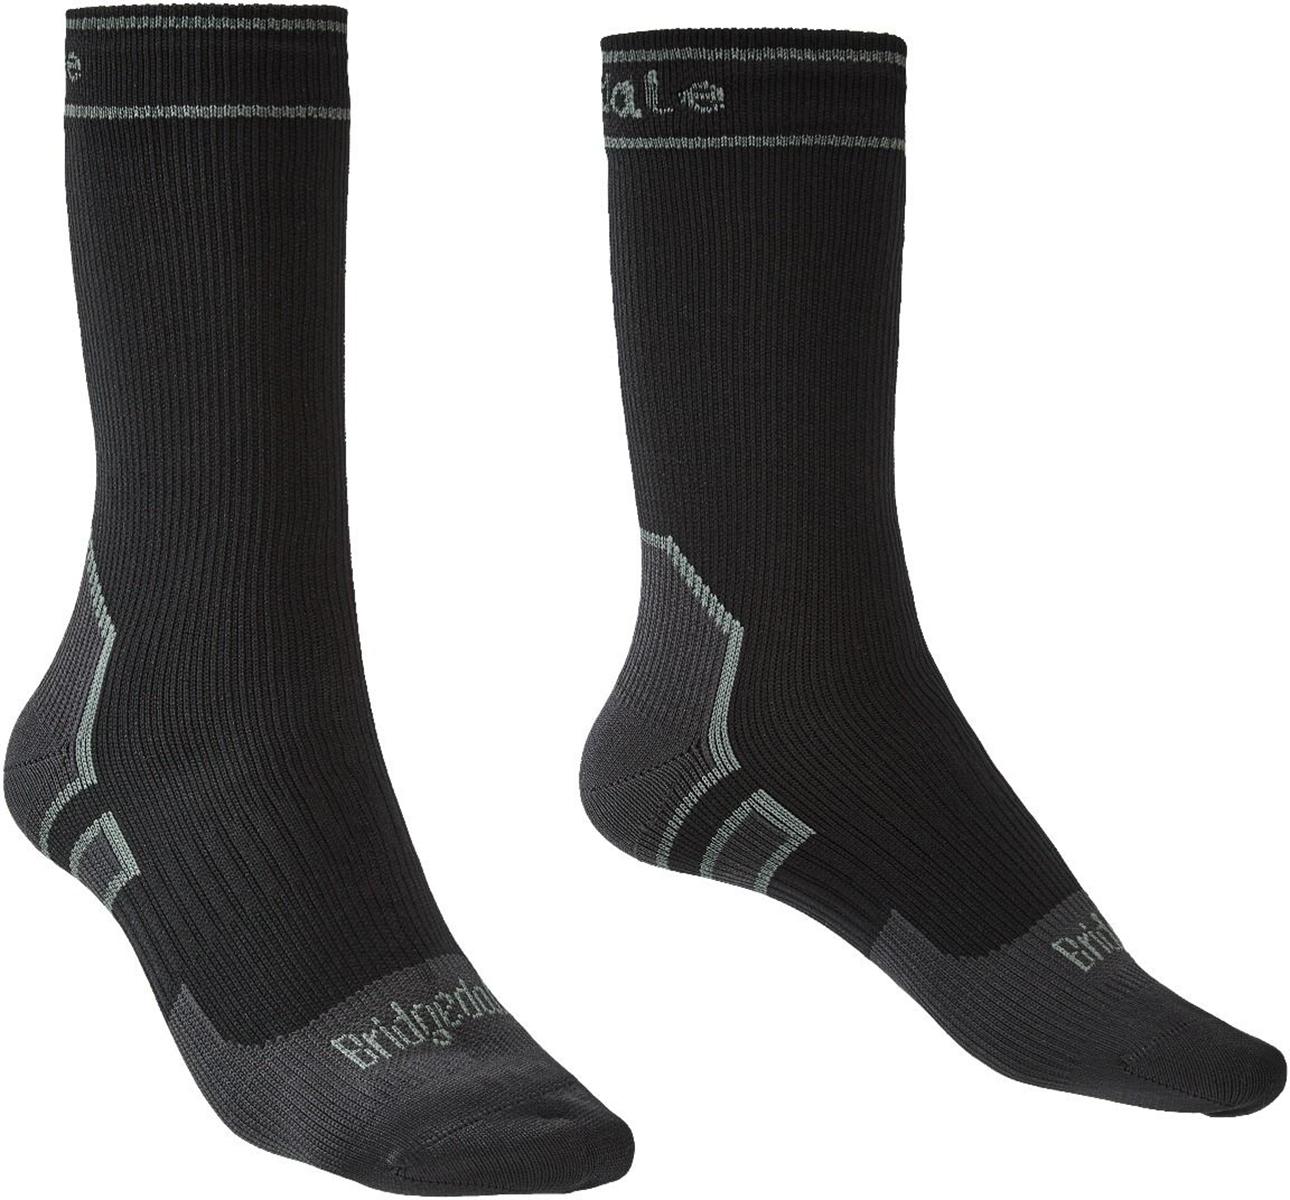 Bridgedale Stormsock Lightweight Waterproof Boot Socks - Black